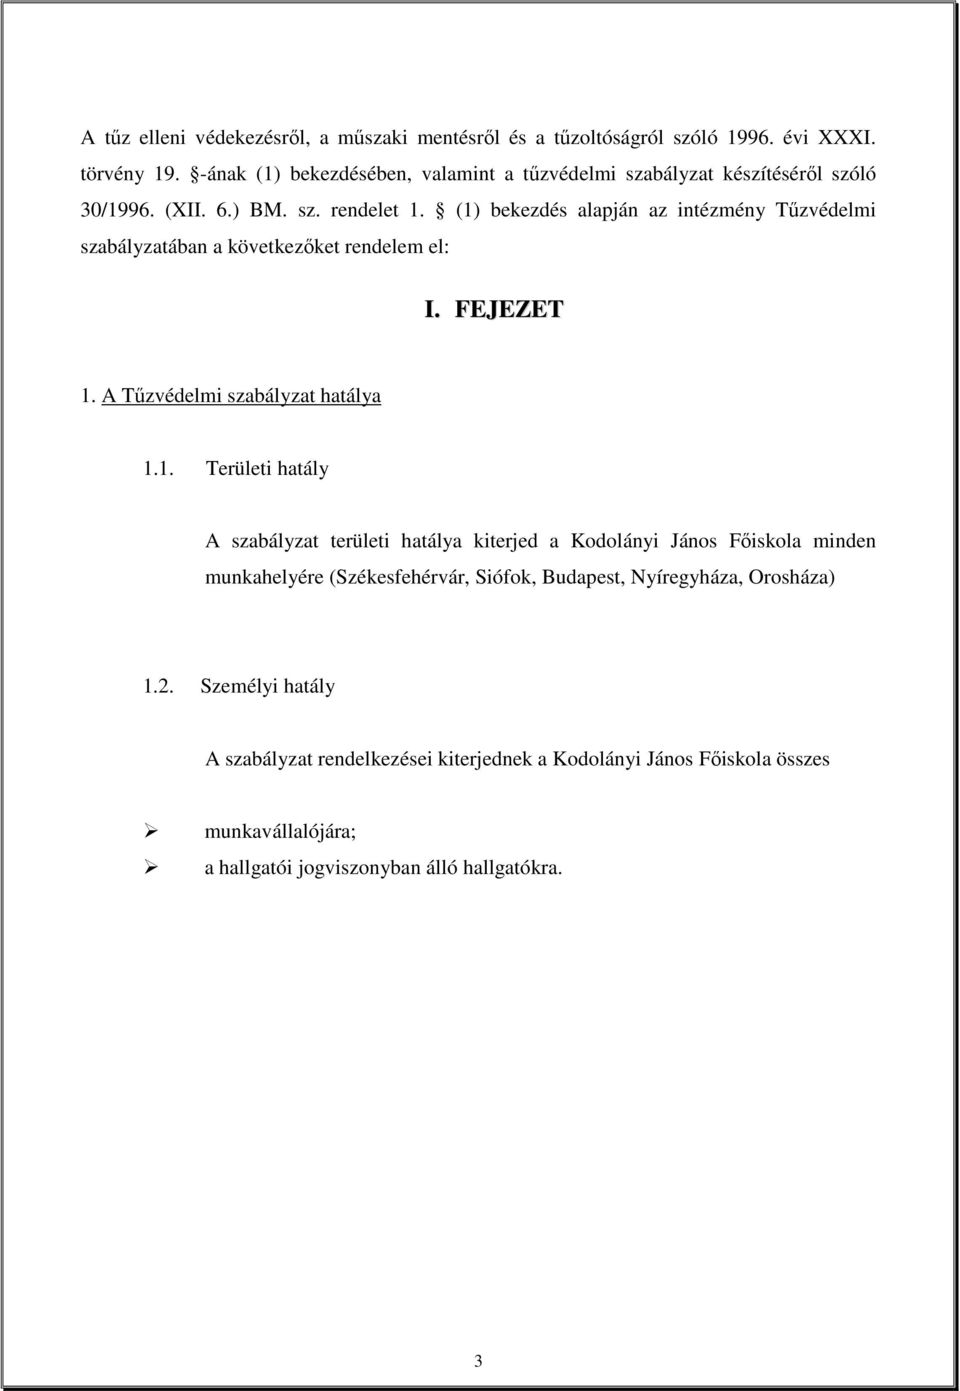 (1) bekezdés alapján az intézmény Tőzvédelmi szabályzatában a következıket rendelem el: I. FEJEZET 1. A Tőzvédelmi szabályzat hatálya 1.1. Területi hatály A szabályzat területi hatálya kiterjed a Kodolányi János Fıiskola minden munkahelyére (Székesfehérvár, Siófok, Budapest, Nyíregyháza, Orosháza) 1.